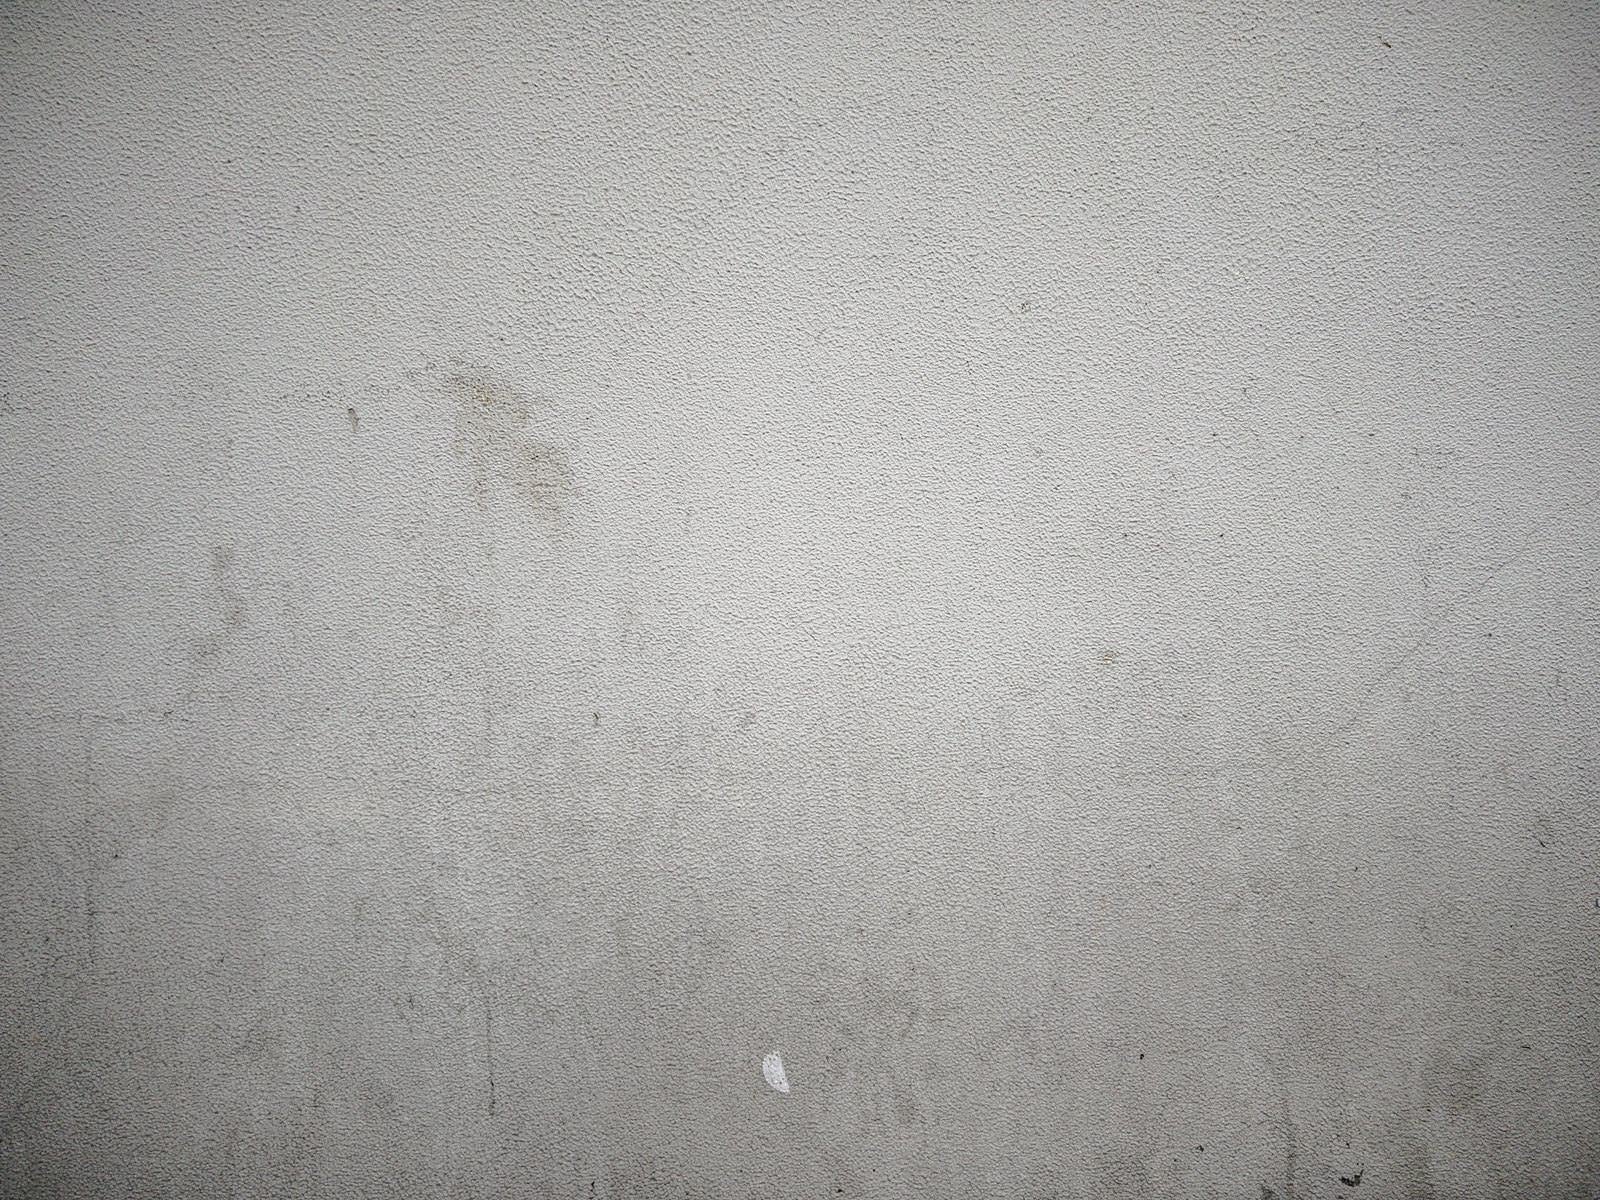 「シミ汚れた外壁のテクスチャー」の写真